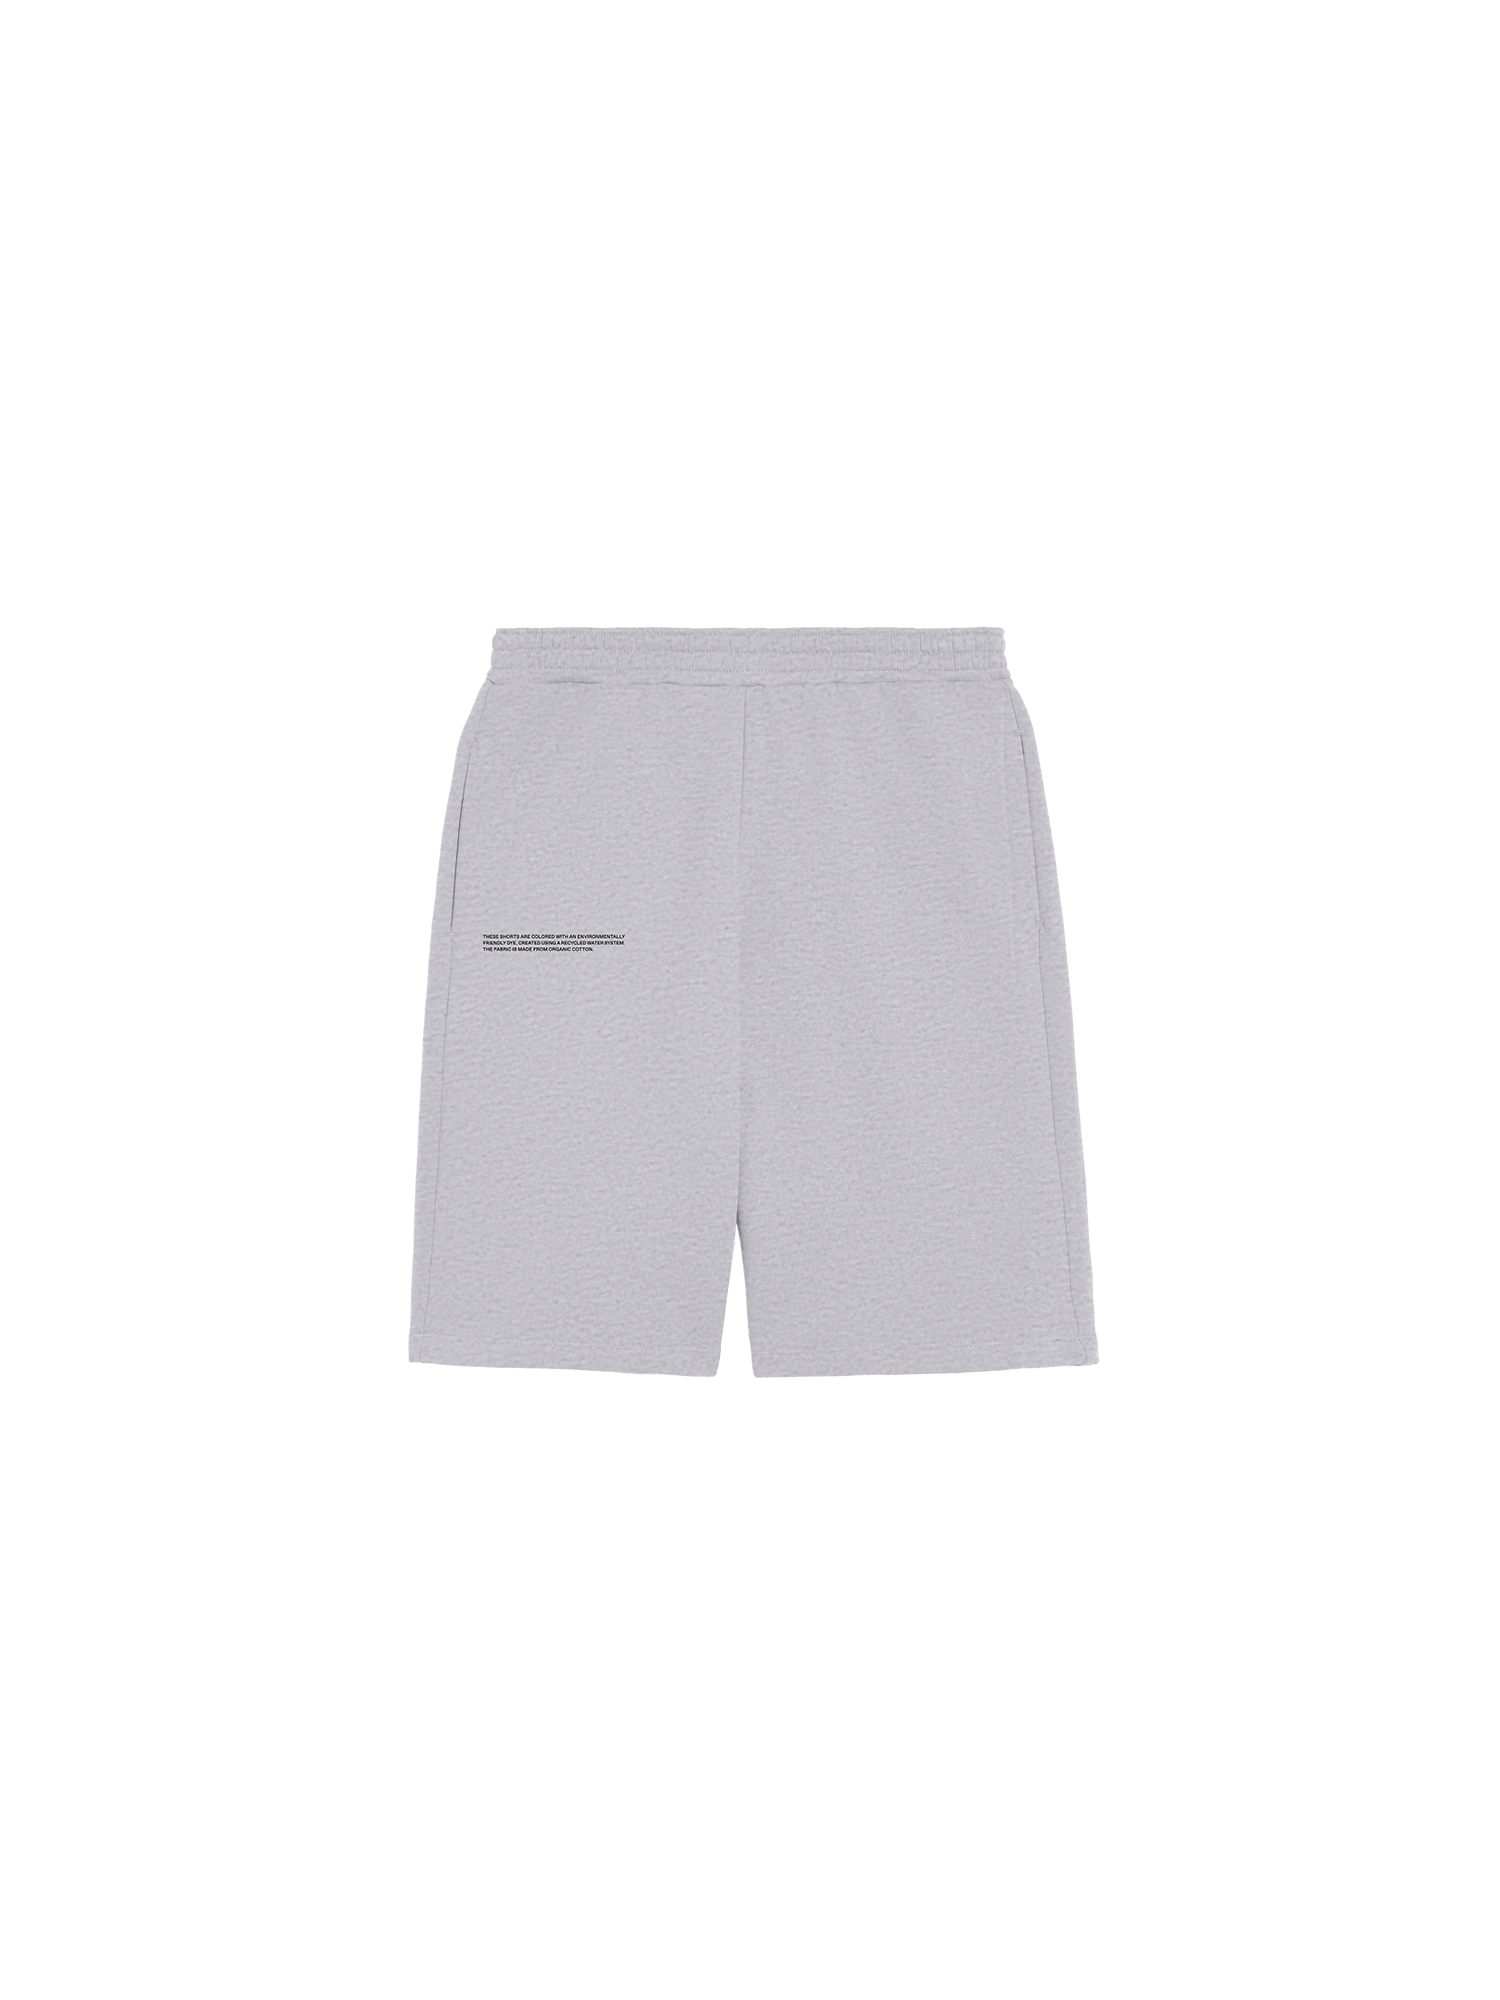  365 Long Shorts-packshot-3